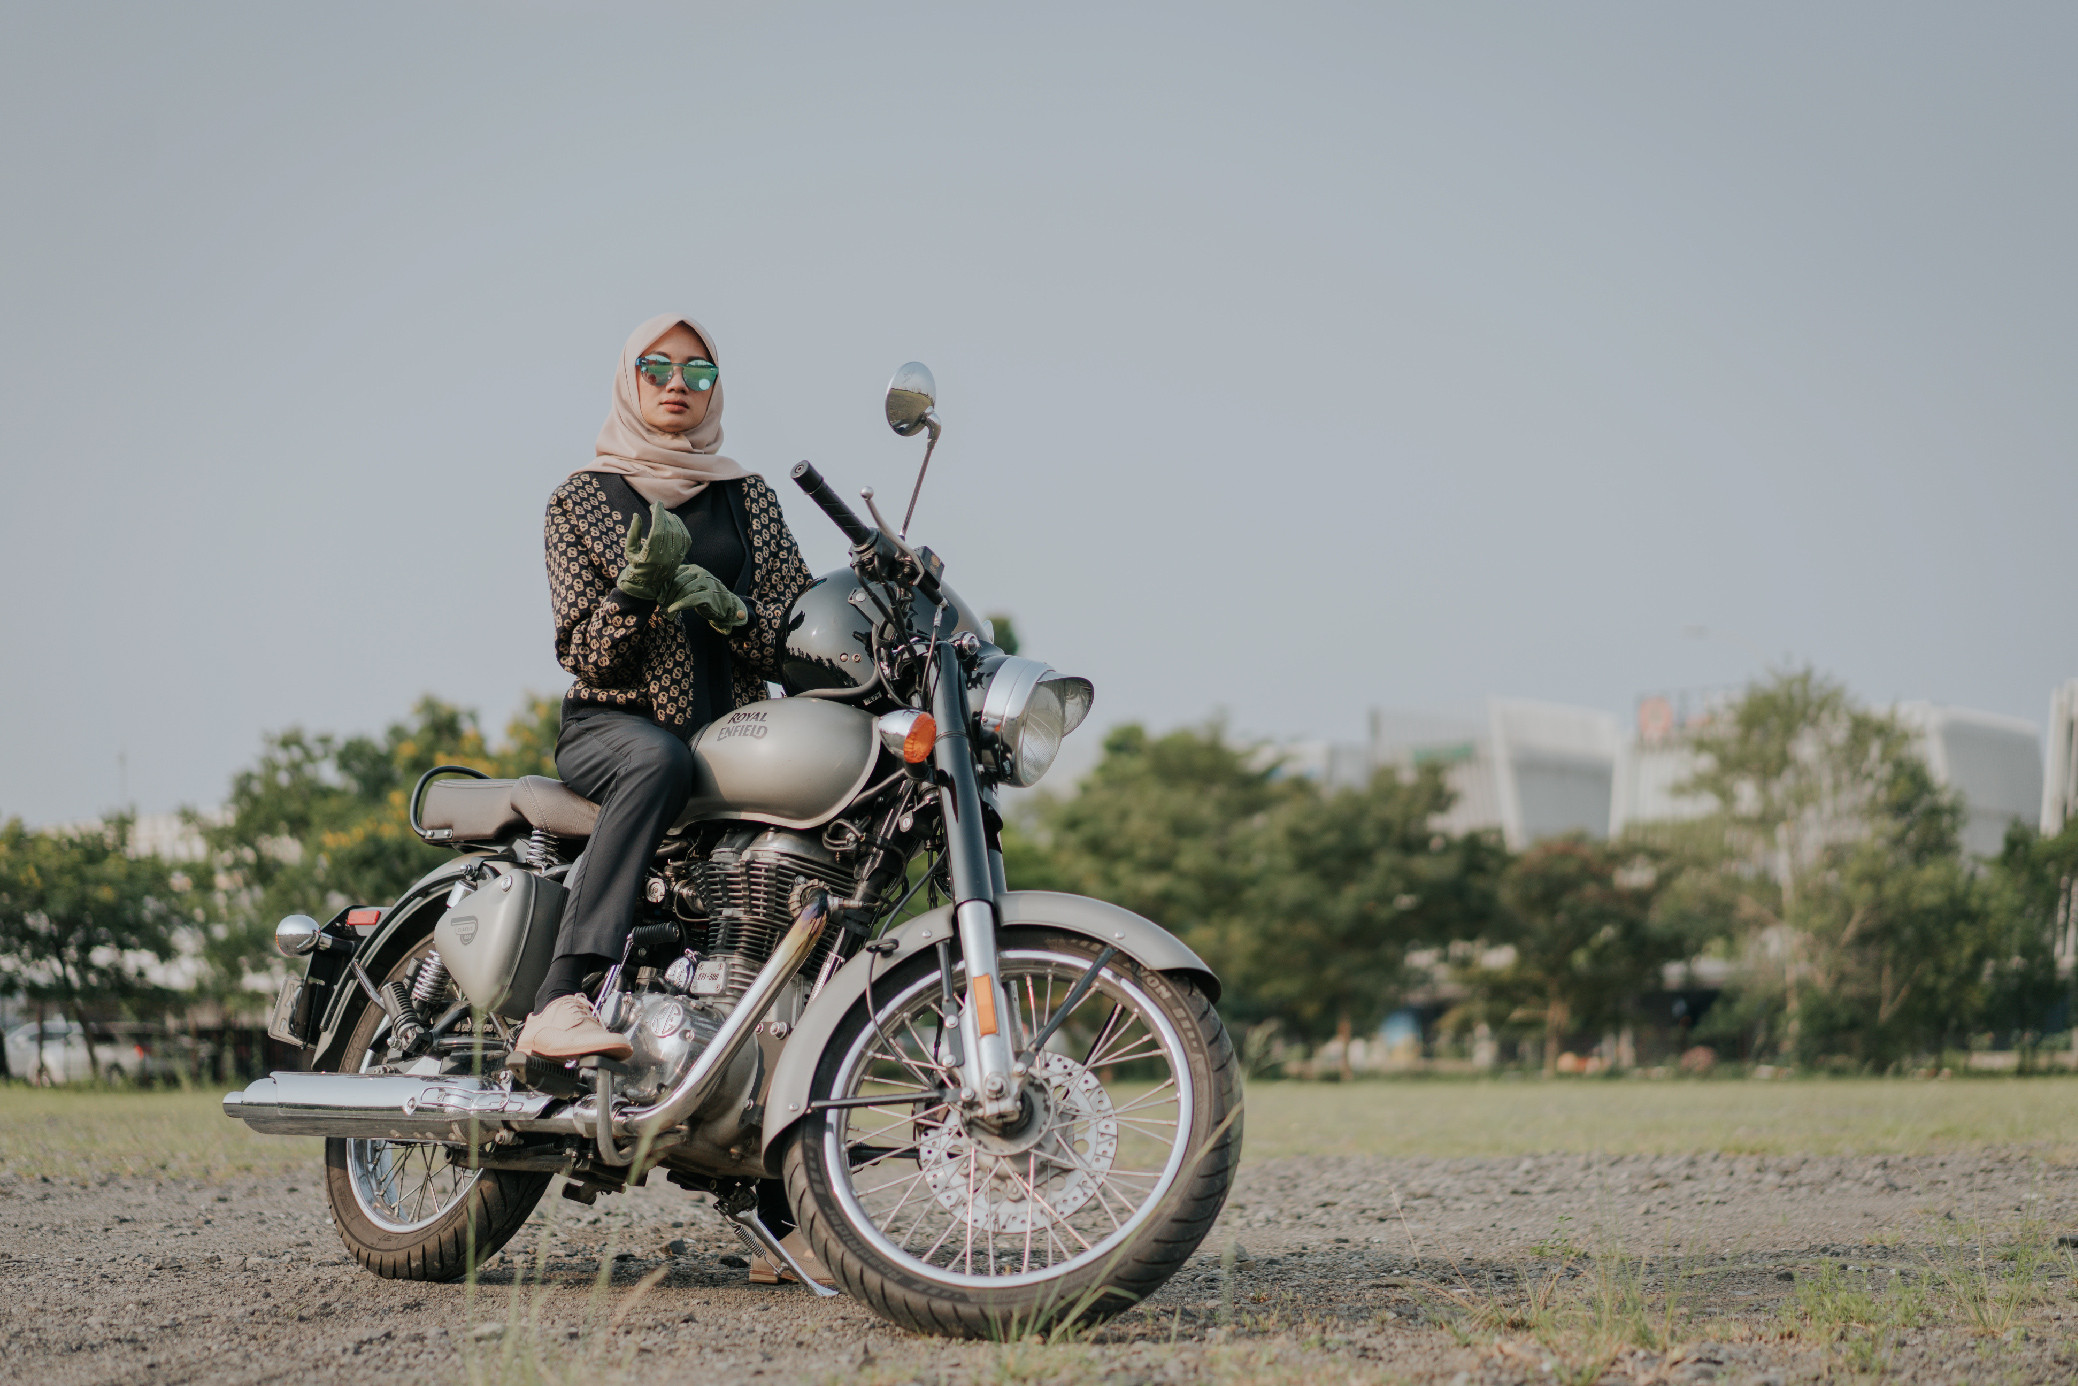 Royal Enfield Dukung #Embraceequity, Perempuan Mampu Patahkan Stereotip Dan Rasakan Pure Motorcycling